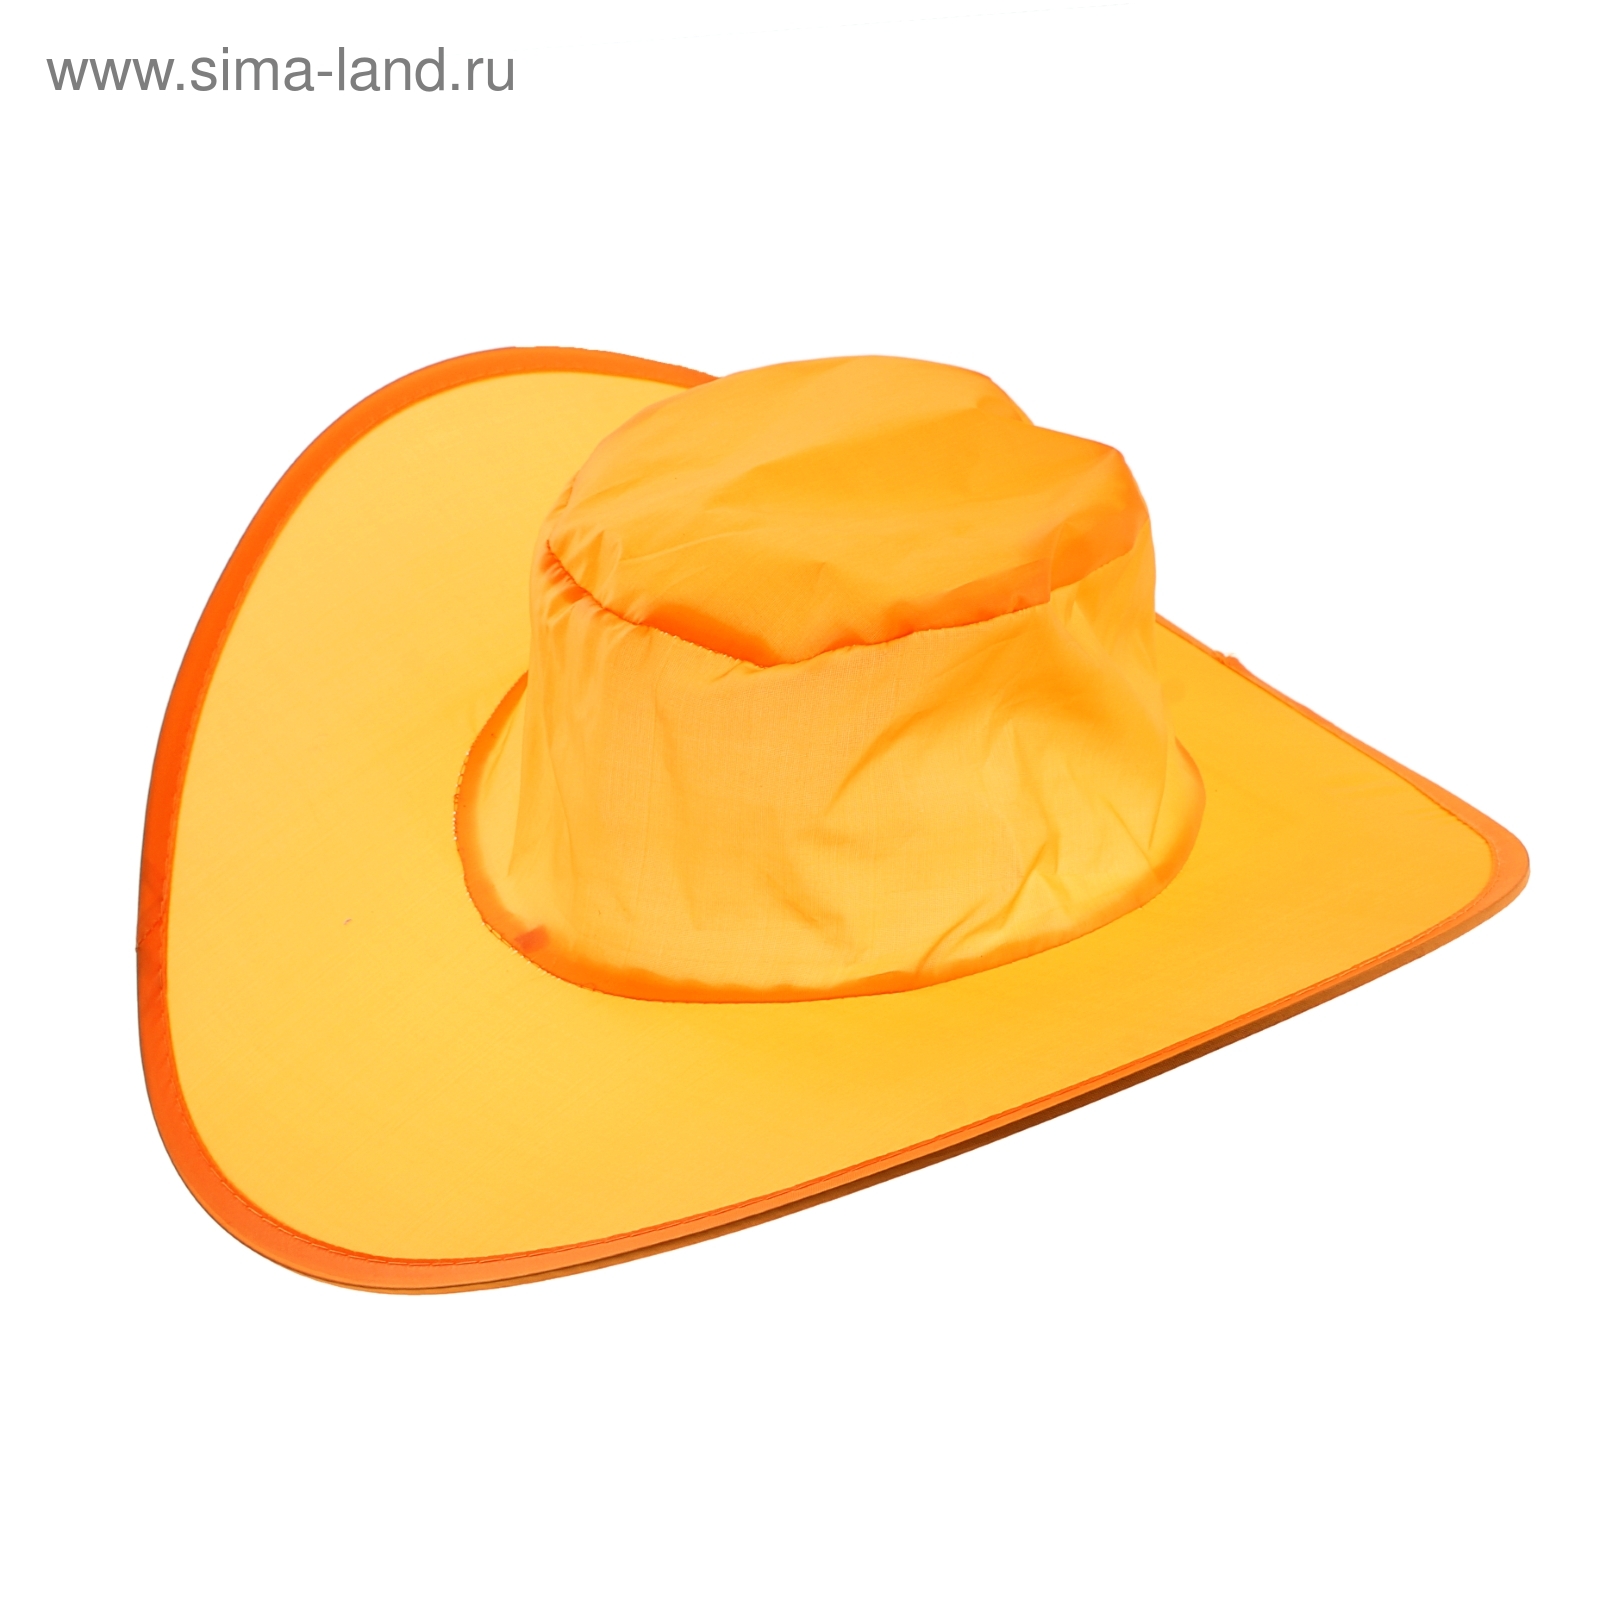 Шляпа складная в чехле, цвет оранжевый, обхват головы 58 см, ширина полей 9 см